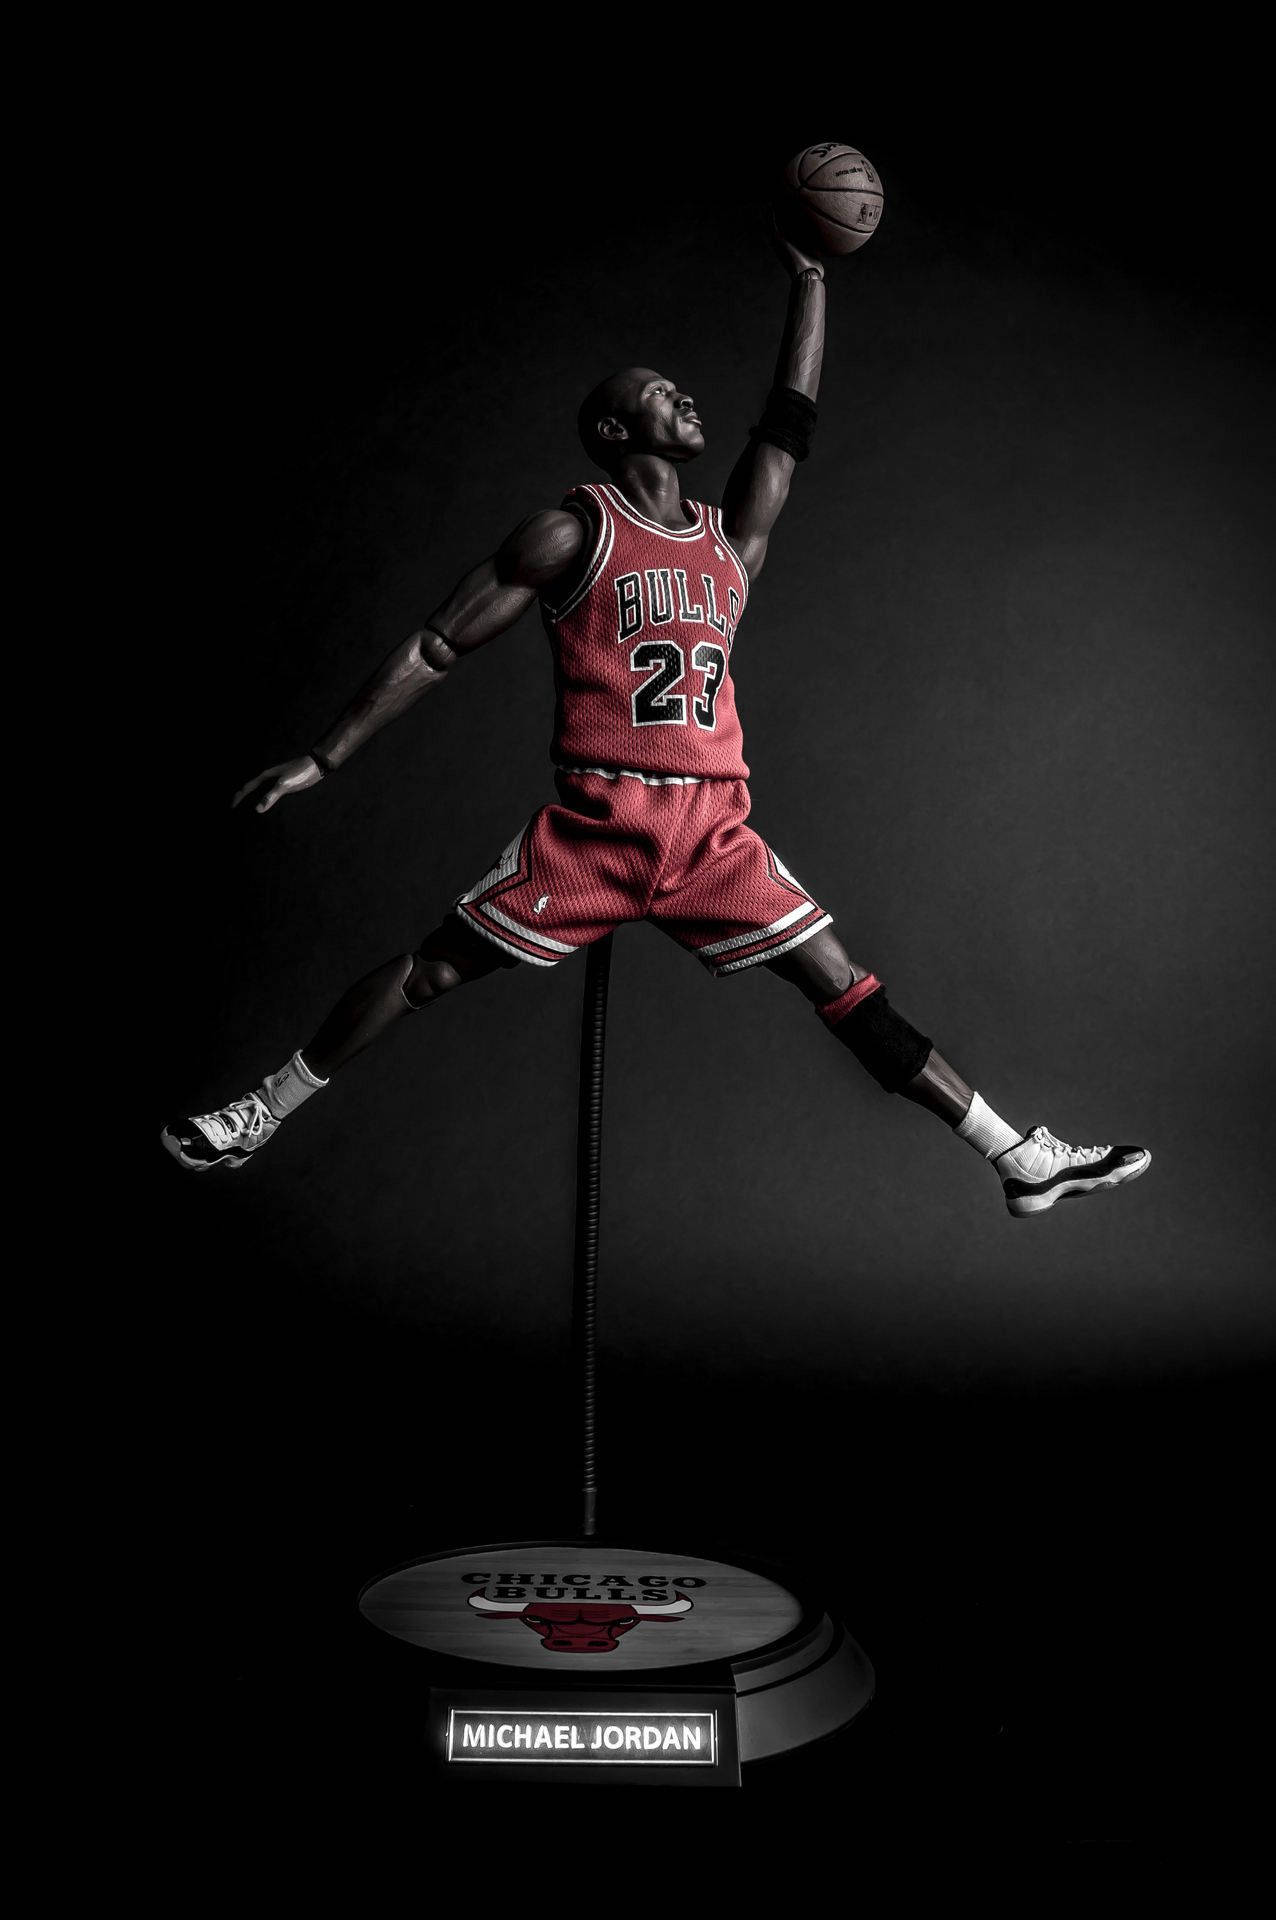 Cool Michael Jordan Action Figure Picture